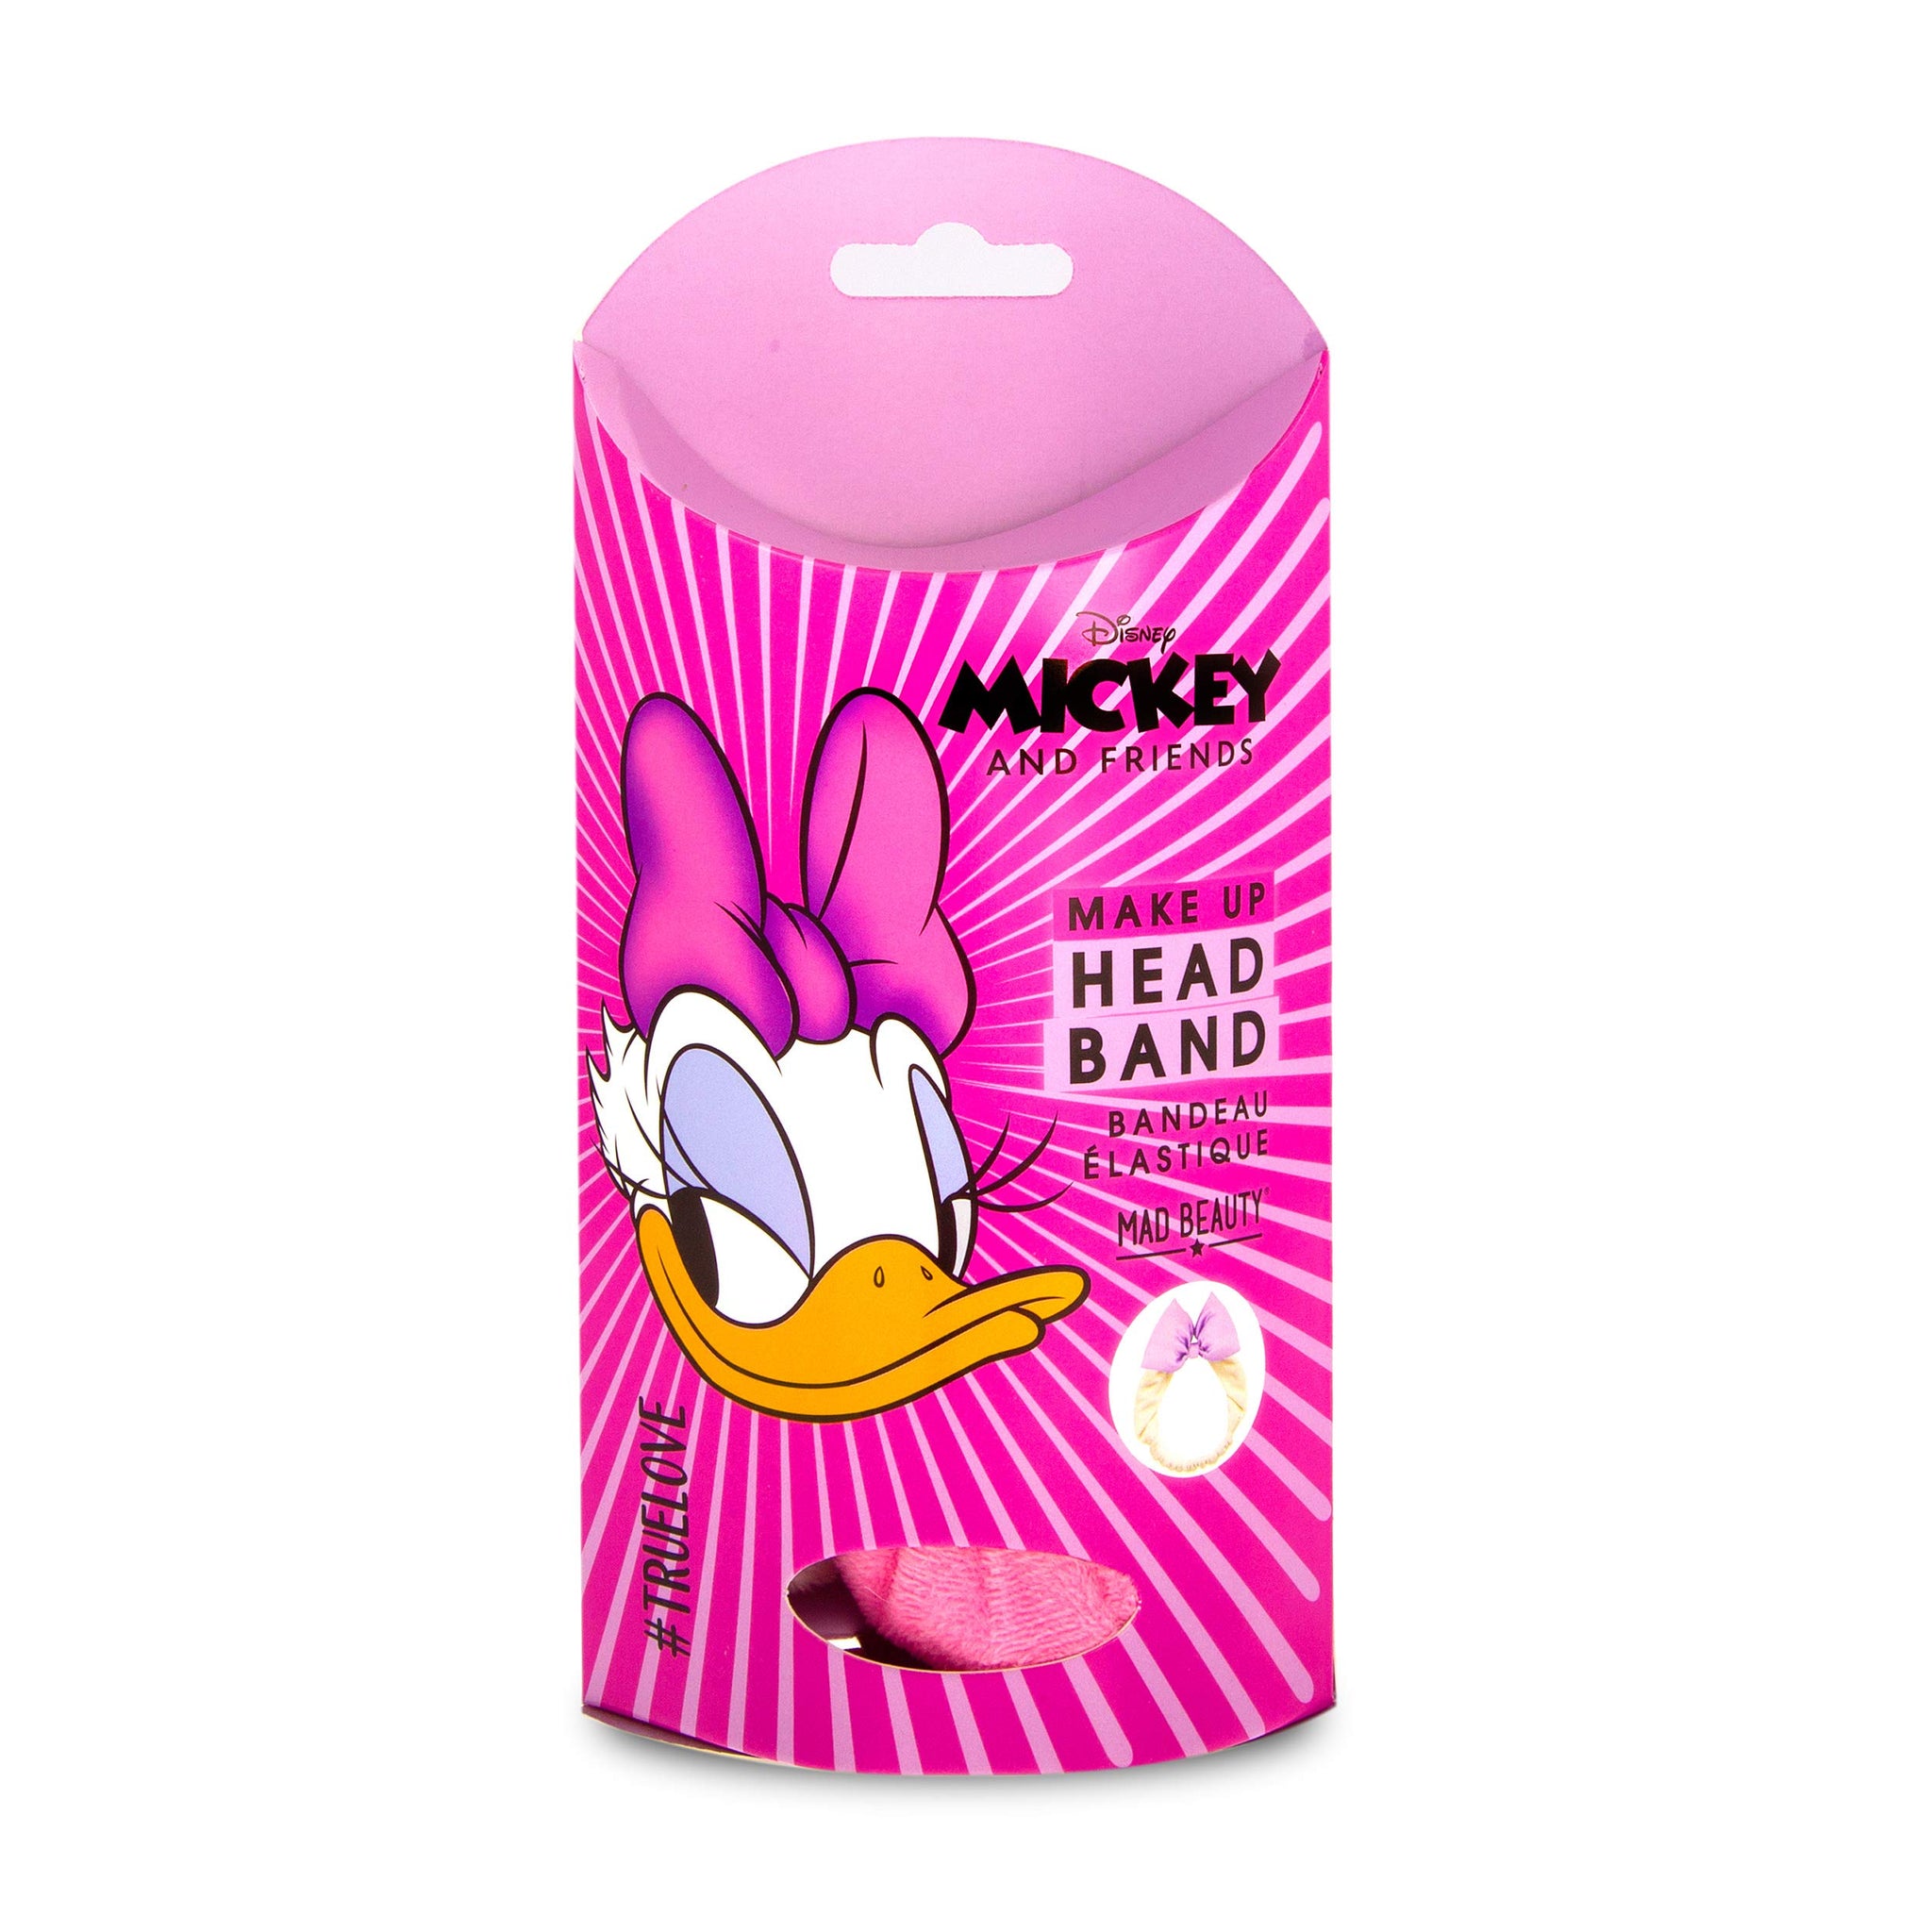 Mad Beauty Mickey & Friends Daisy Duck Headband